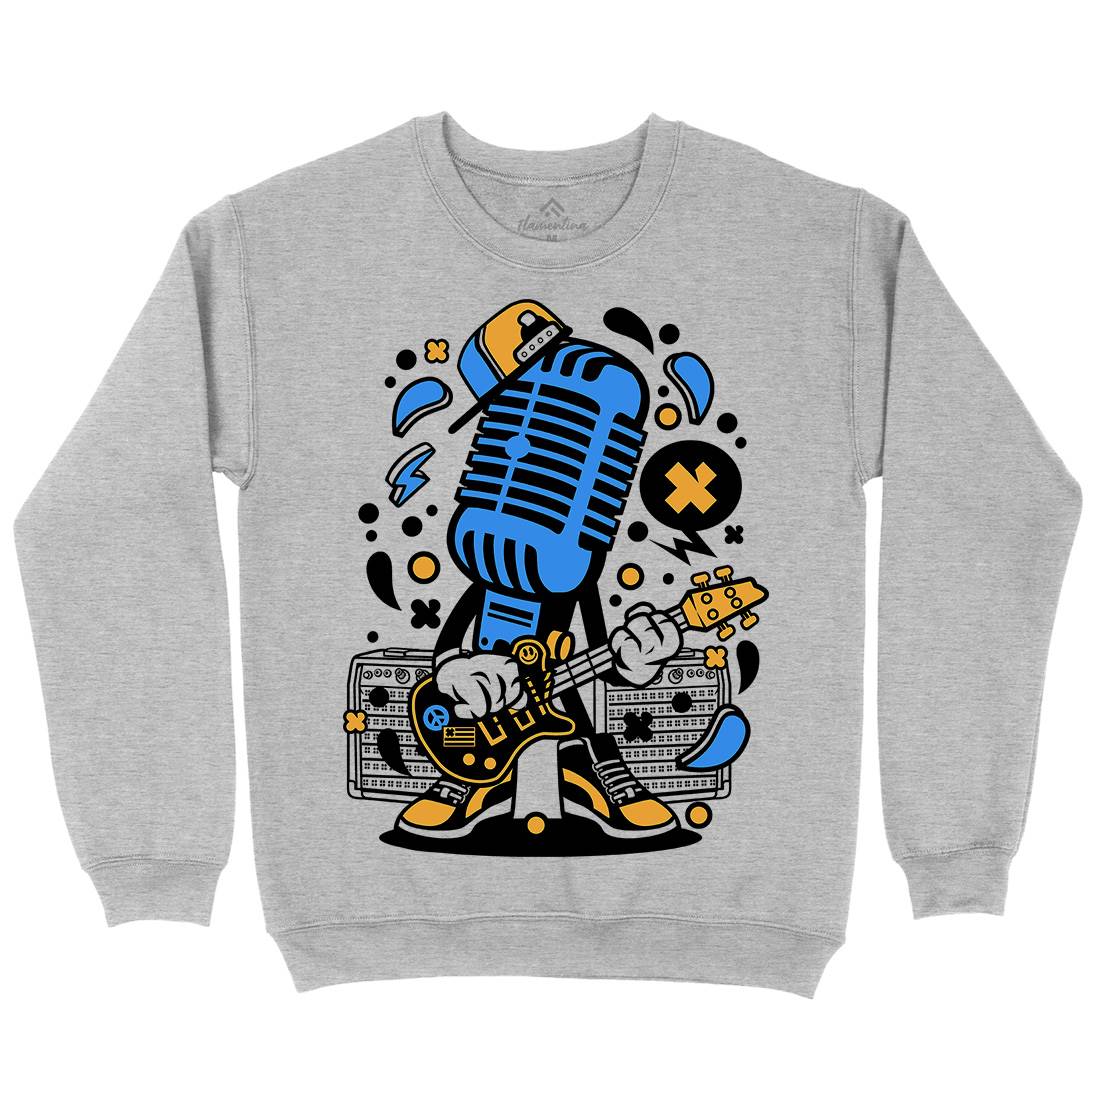 Microphone Rocker Kids Crew Neck Sweatshirt Music C170